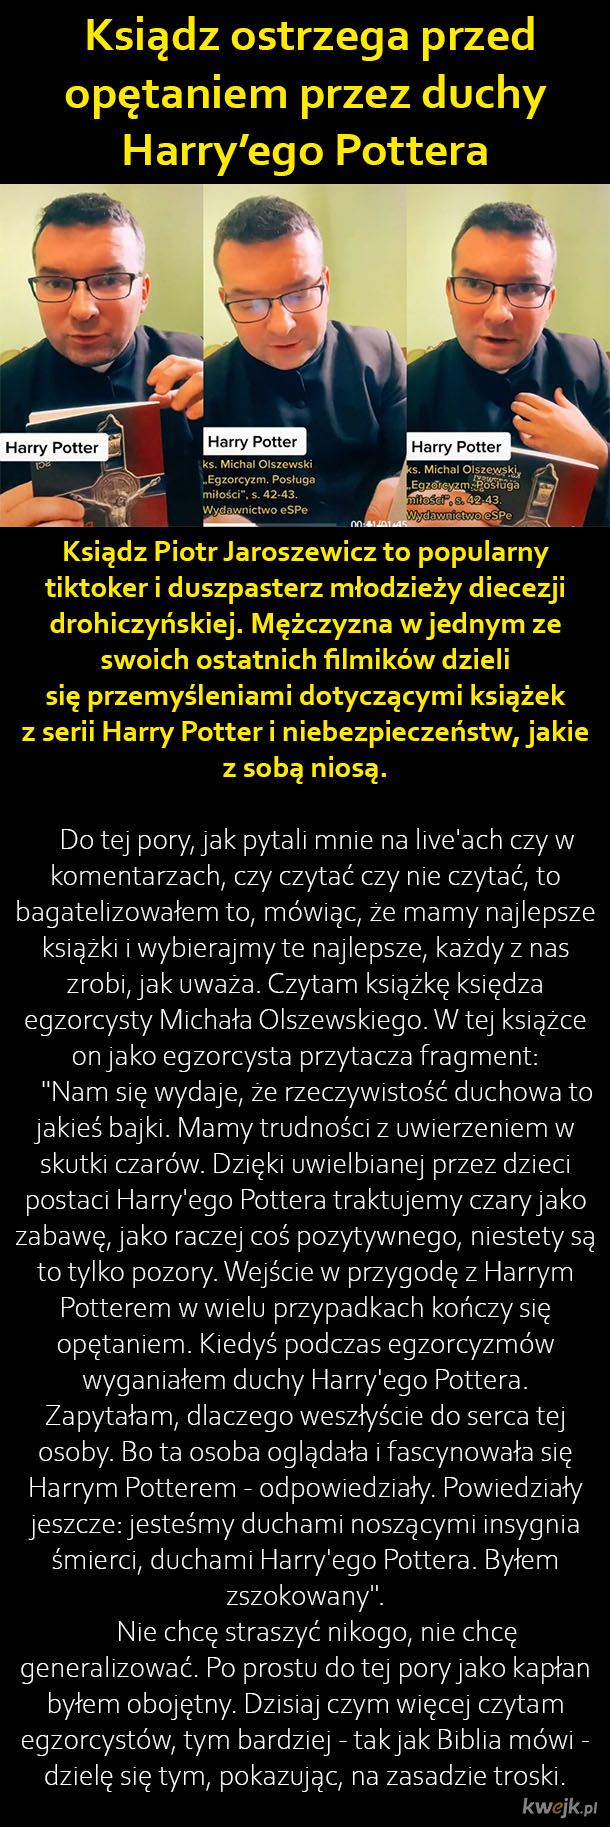 Zły Potter